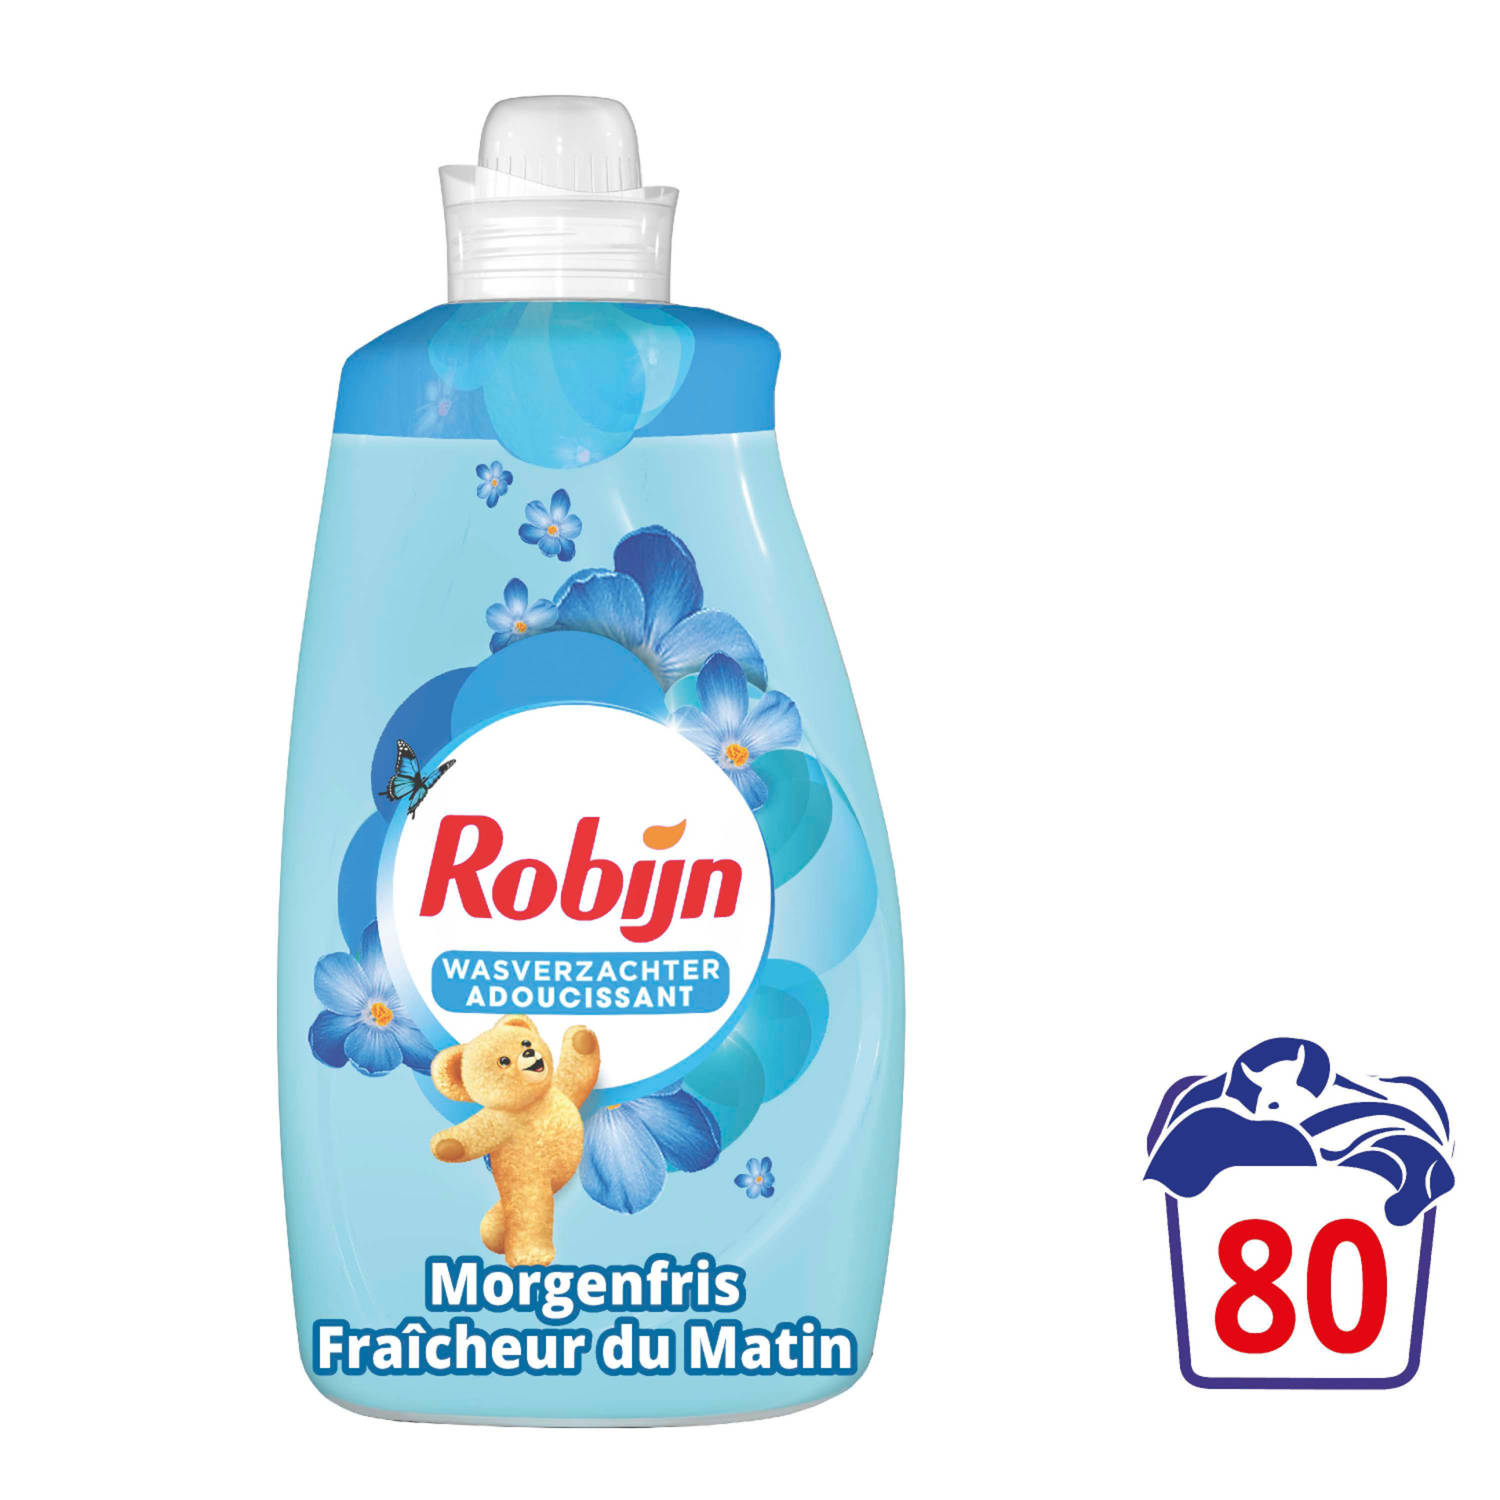 Robijn Morgenfris Wasverzachter ​- 8 x 40 wasbeurten - Voordeelverpakking